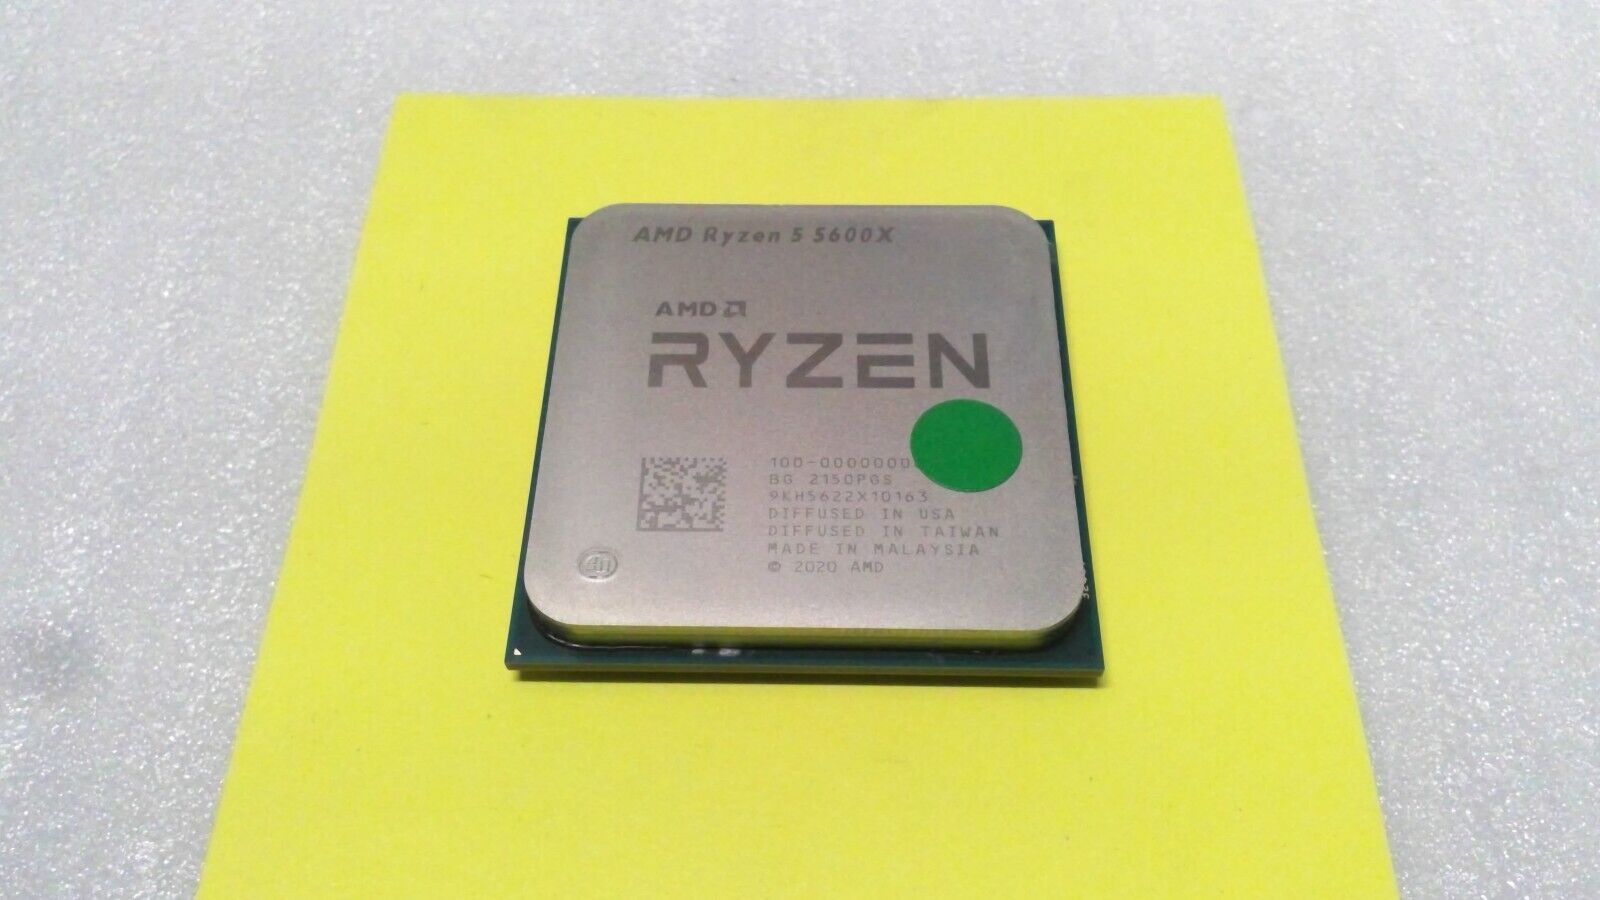 AMD Ryzen 5 5600X CPU Processor (4.6GHz, 6 Cores, Socket AM4)